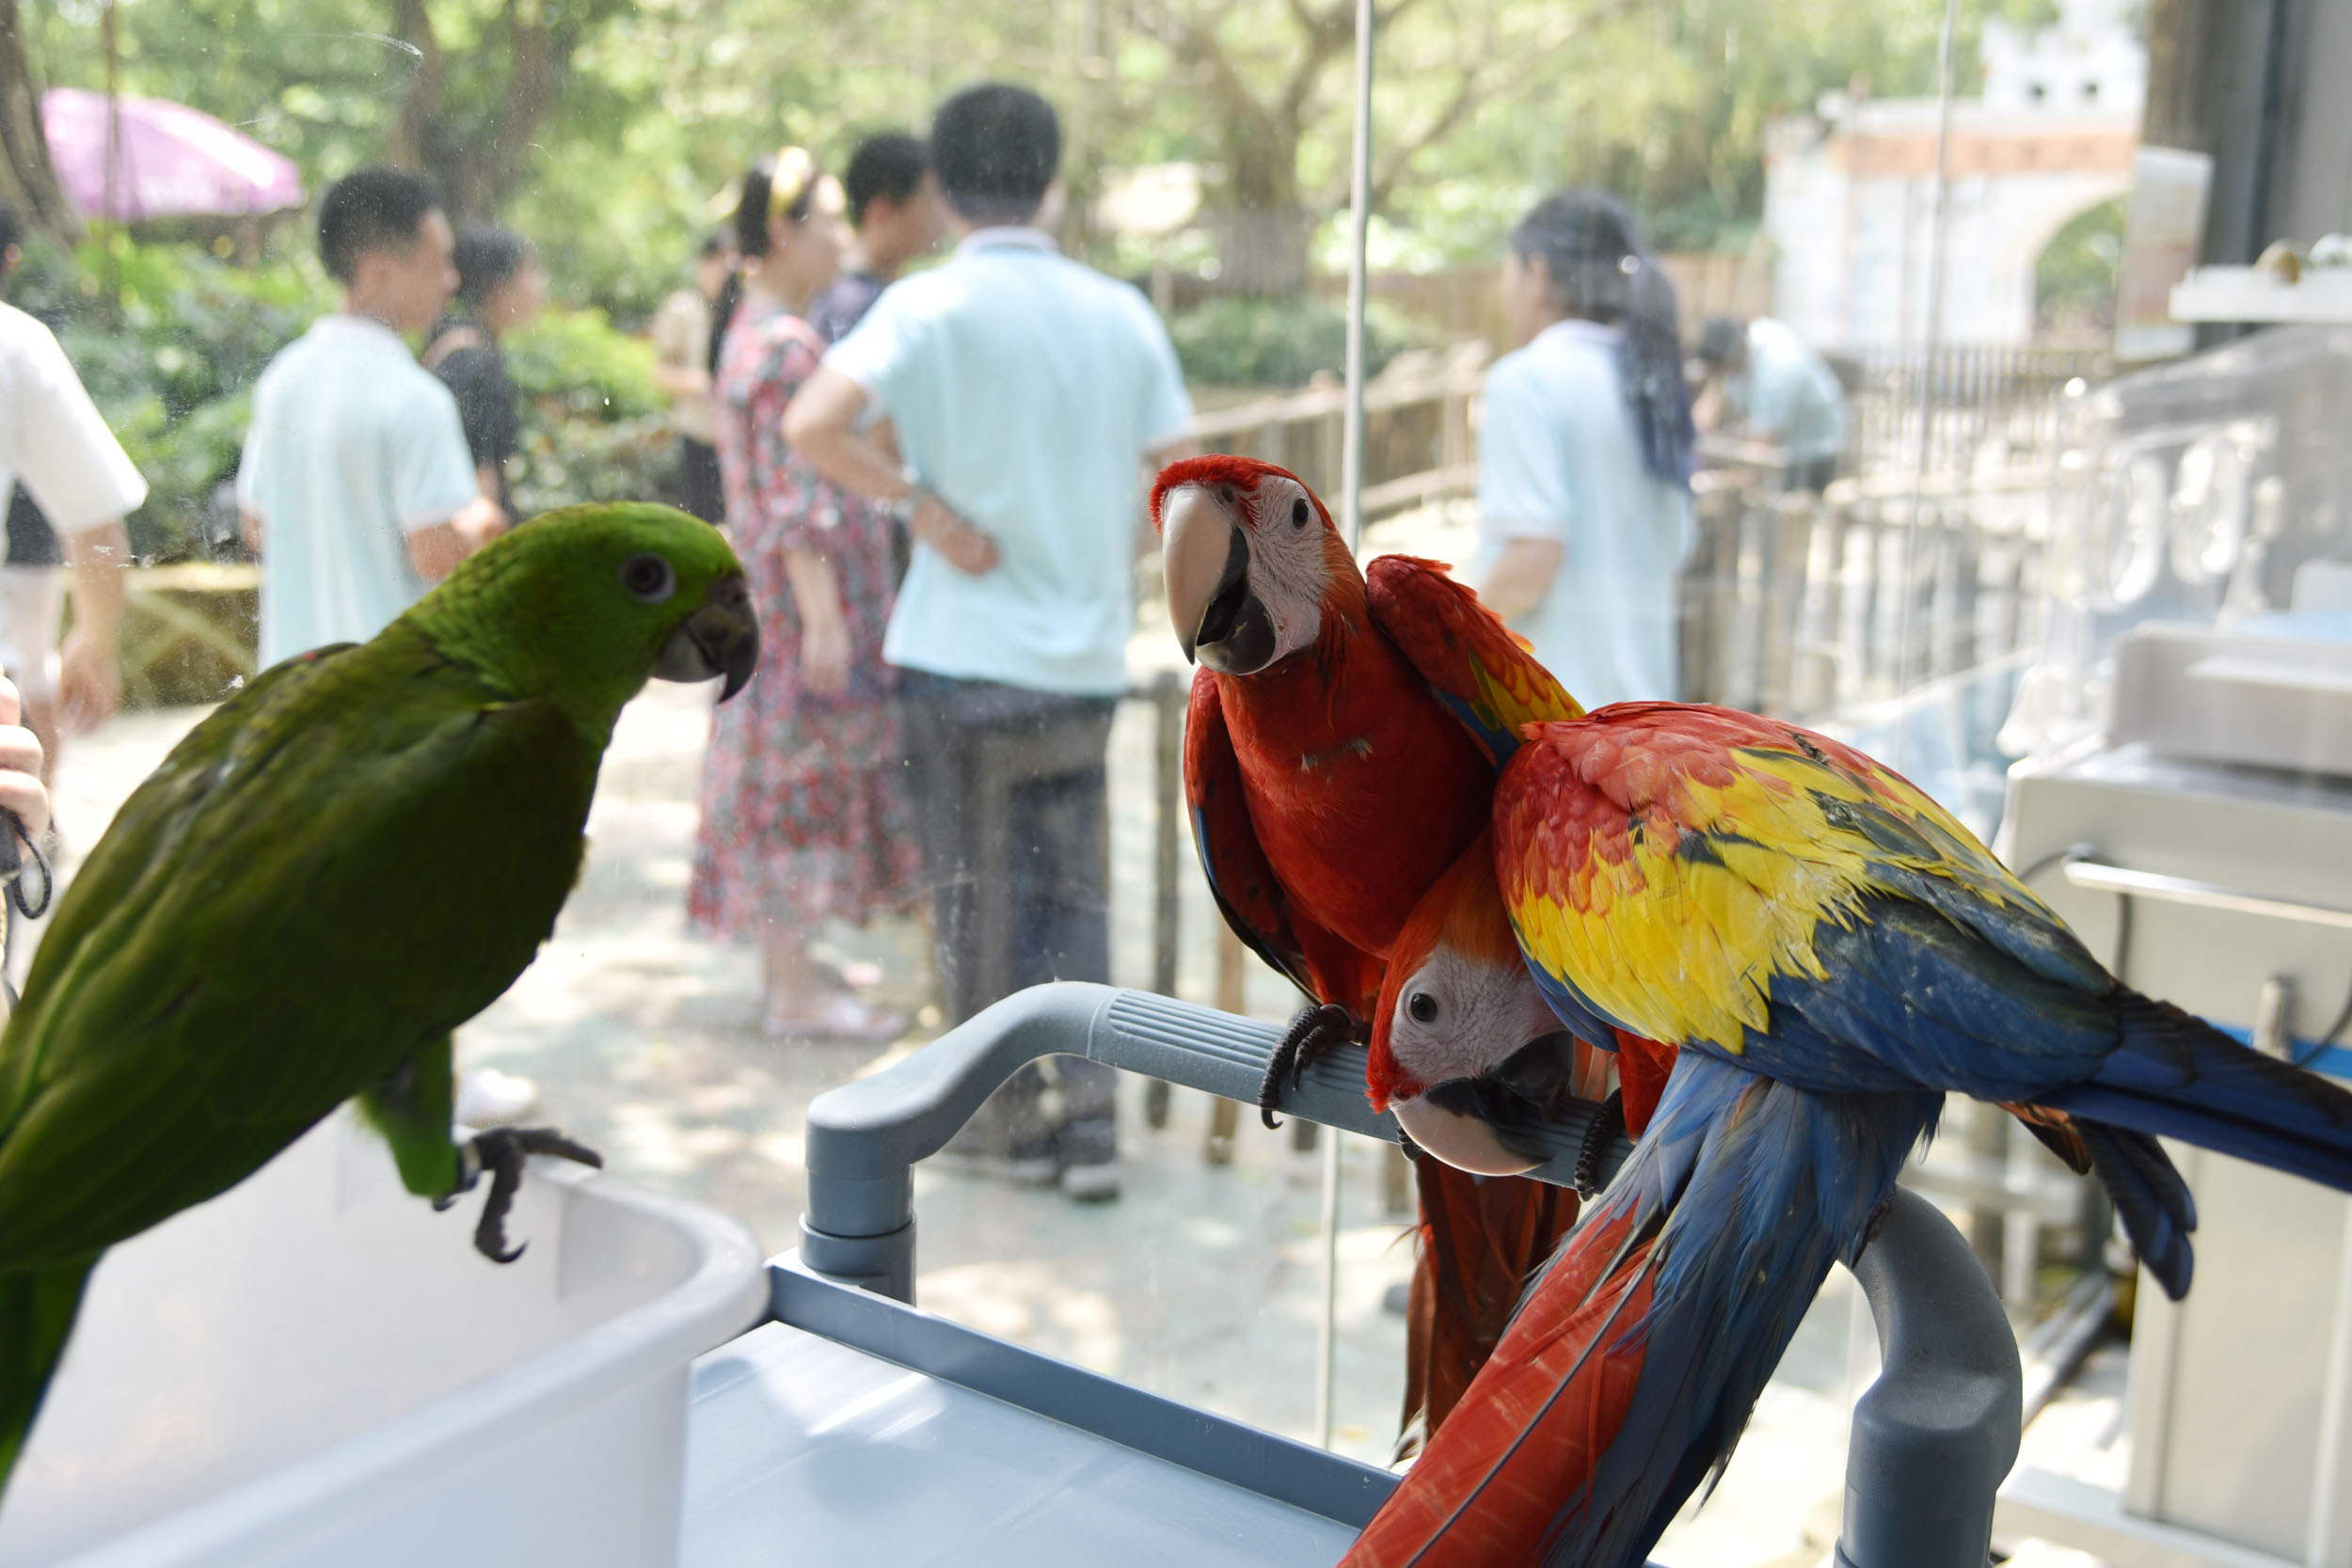 黃冠亞馬遜鸚鵡(左)和緋紅金剛鸚鵡(右)在動物園飼養員悉心照料健康長大